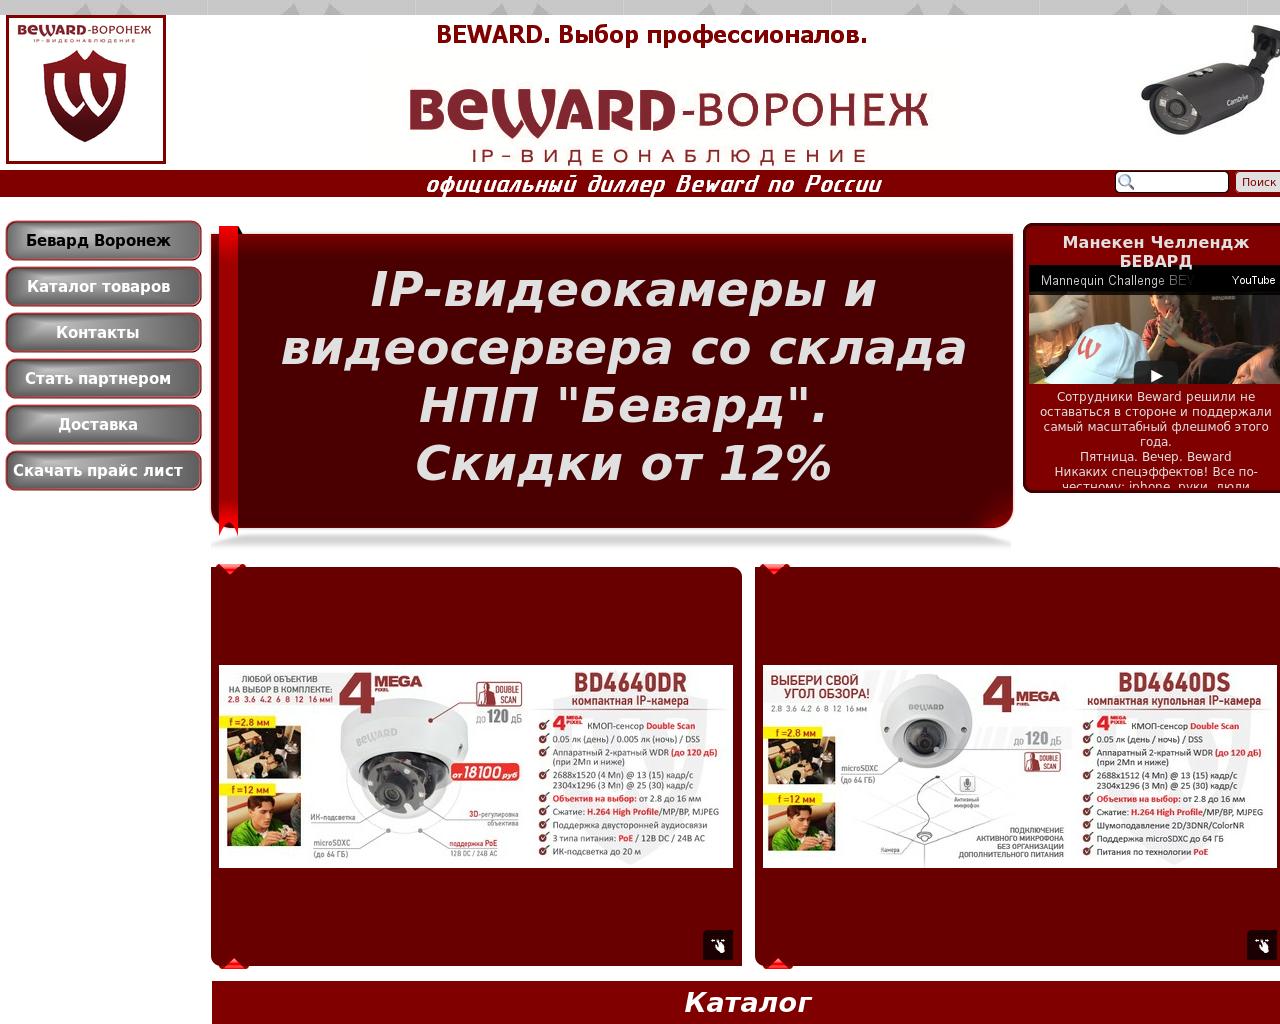 Изображение сайта beward-vrn.ru в разрешении 1280x1024